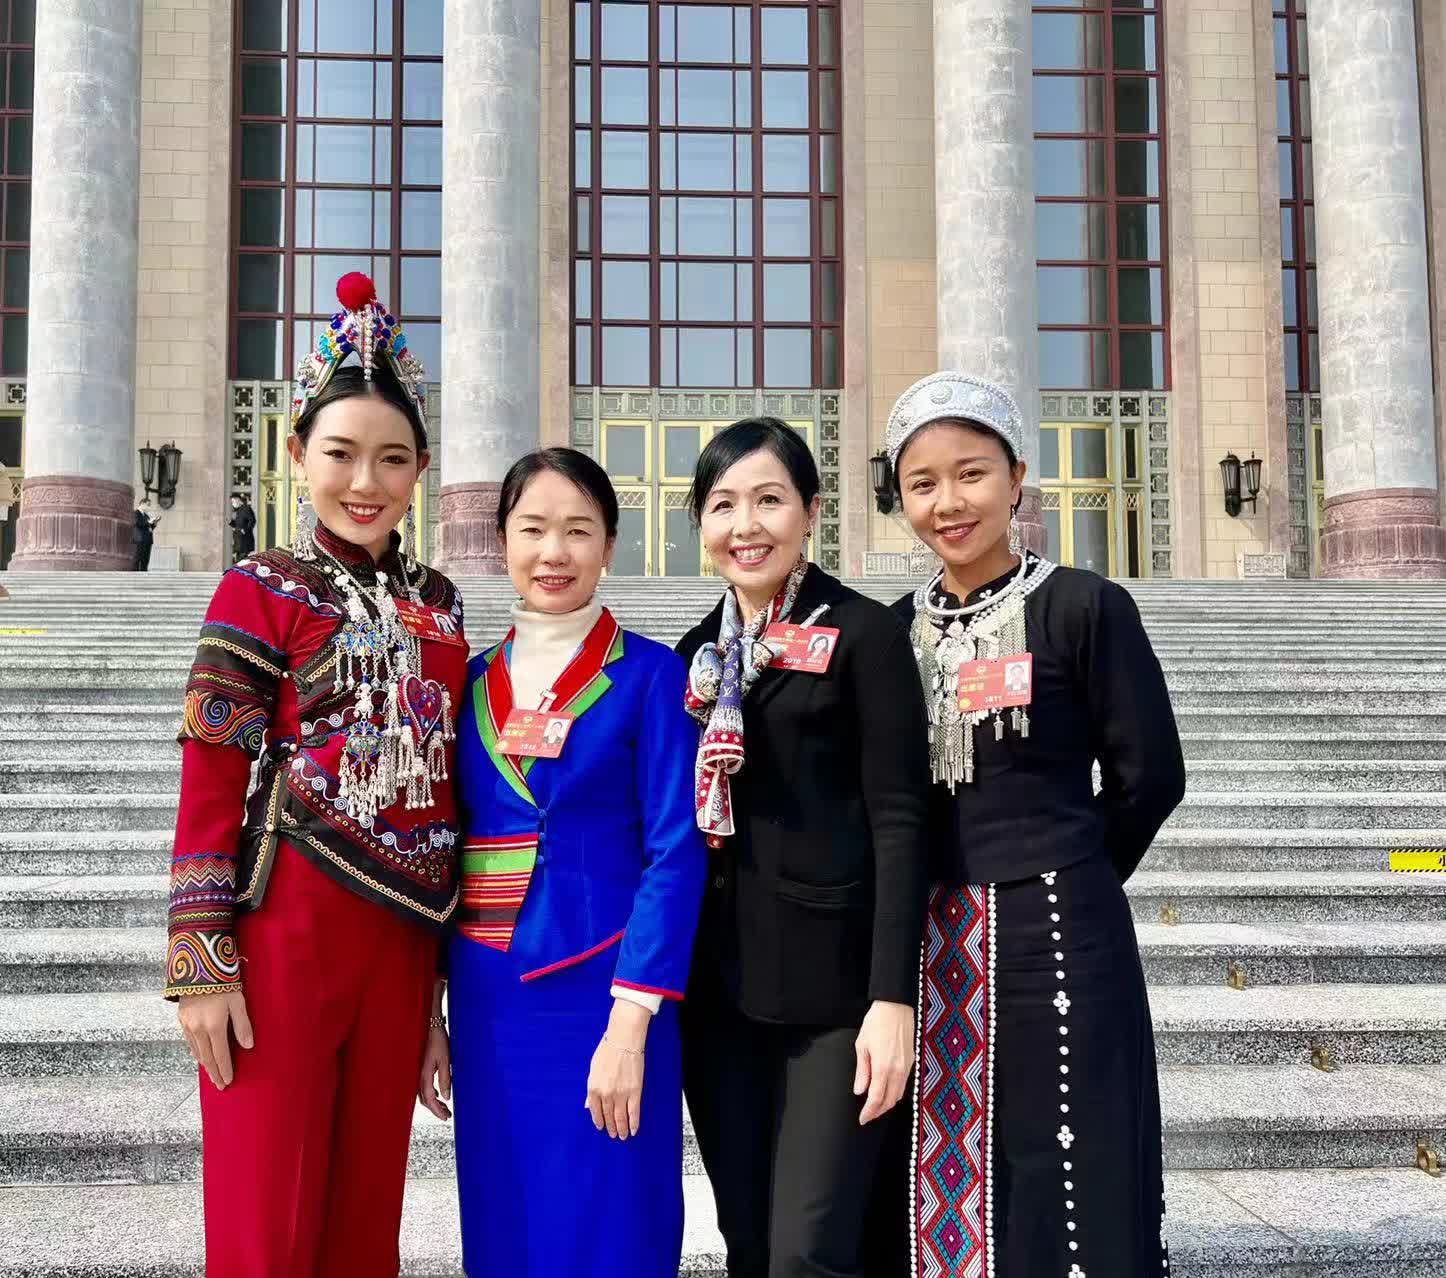 全國各地人大代表和政協委員相聚北京，今日（7日）港區女委員們在北京人民大會堂前合影。在「三八」國際勞動婦女節即將來臨之際，祝全國各族各界女性朋友節日快樂。